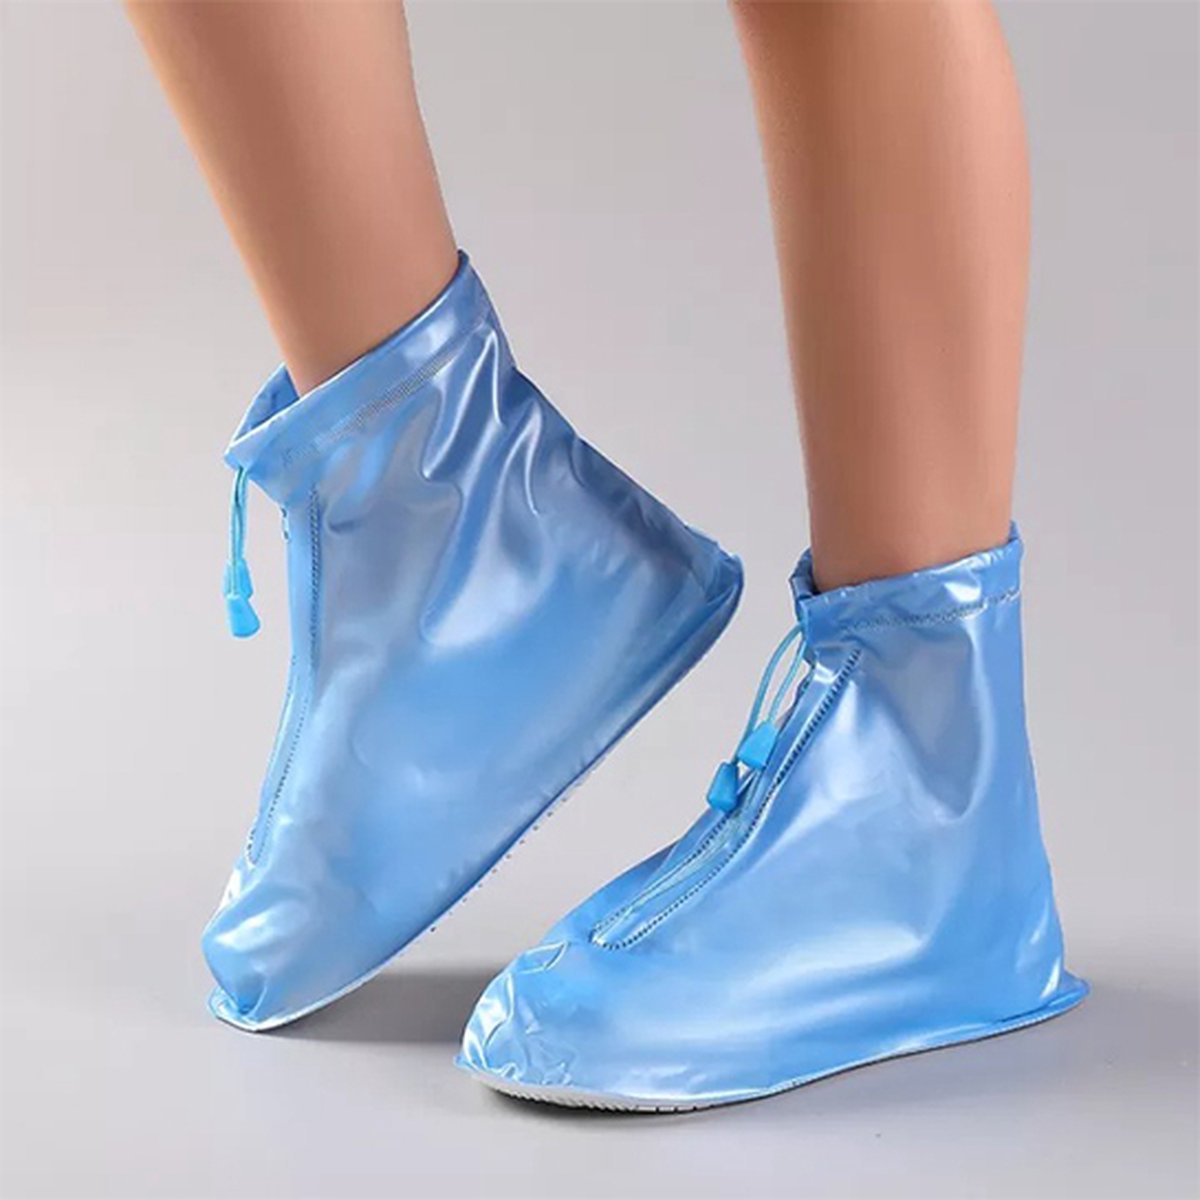 Regen overschoenen - Gekleurd - schoencover - Blauw - Maat: 36/37